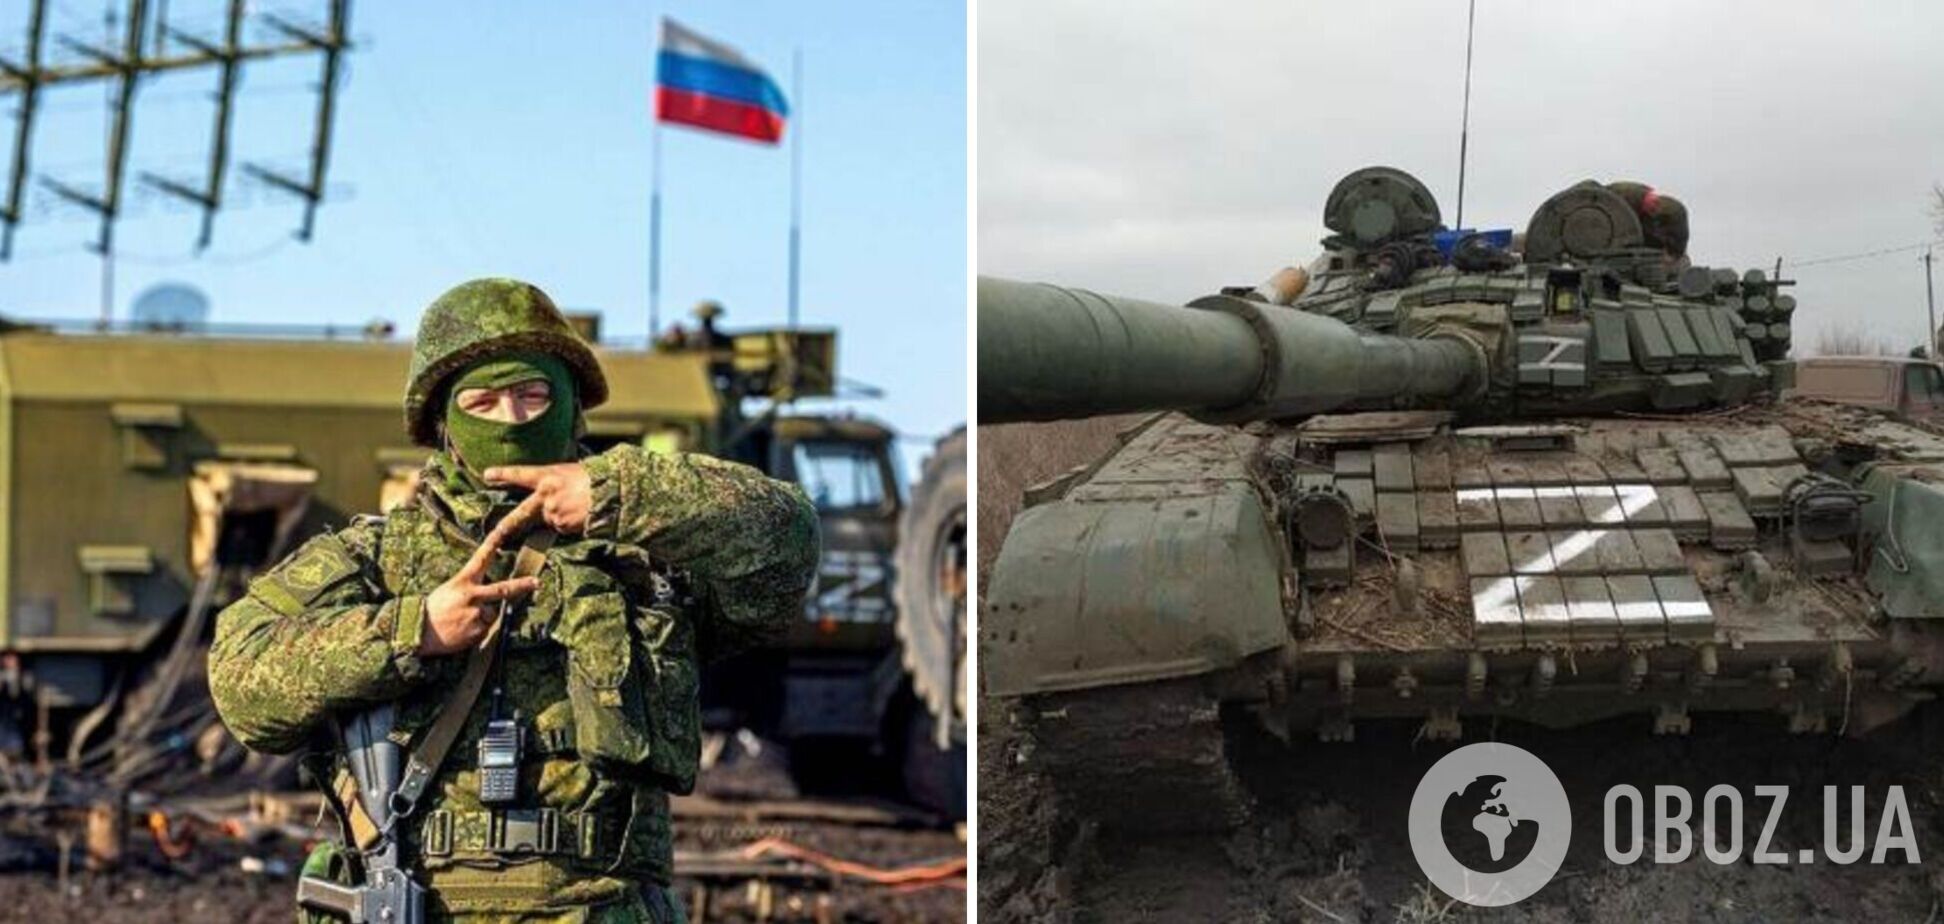 'Большинство россиян не собираются умирать за Путина': СМИ выяснили, как РФ вербует добровольцев для войны в Украине